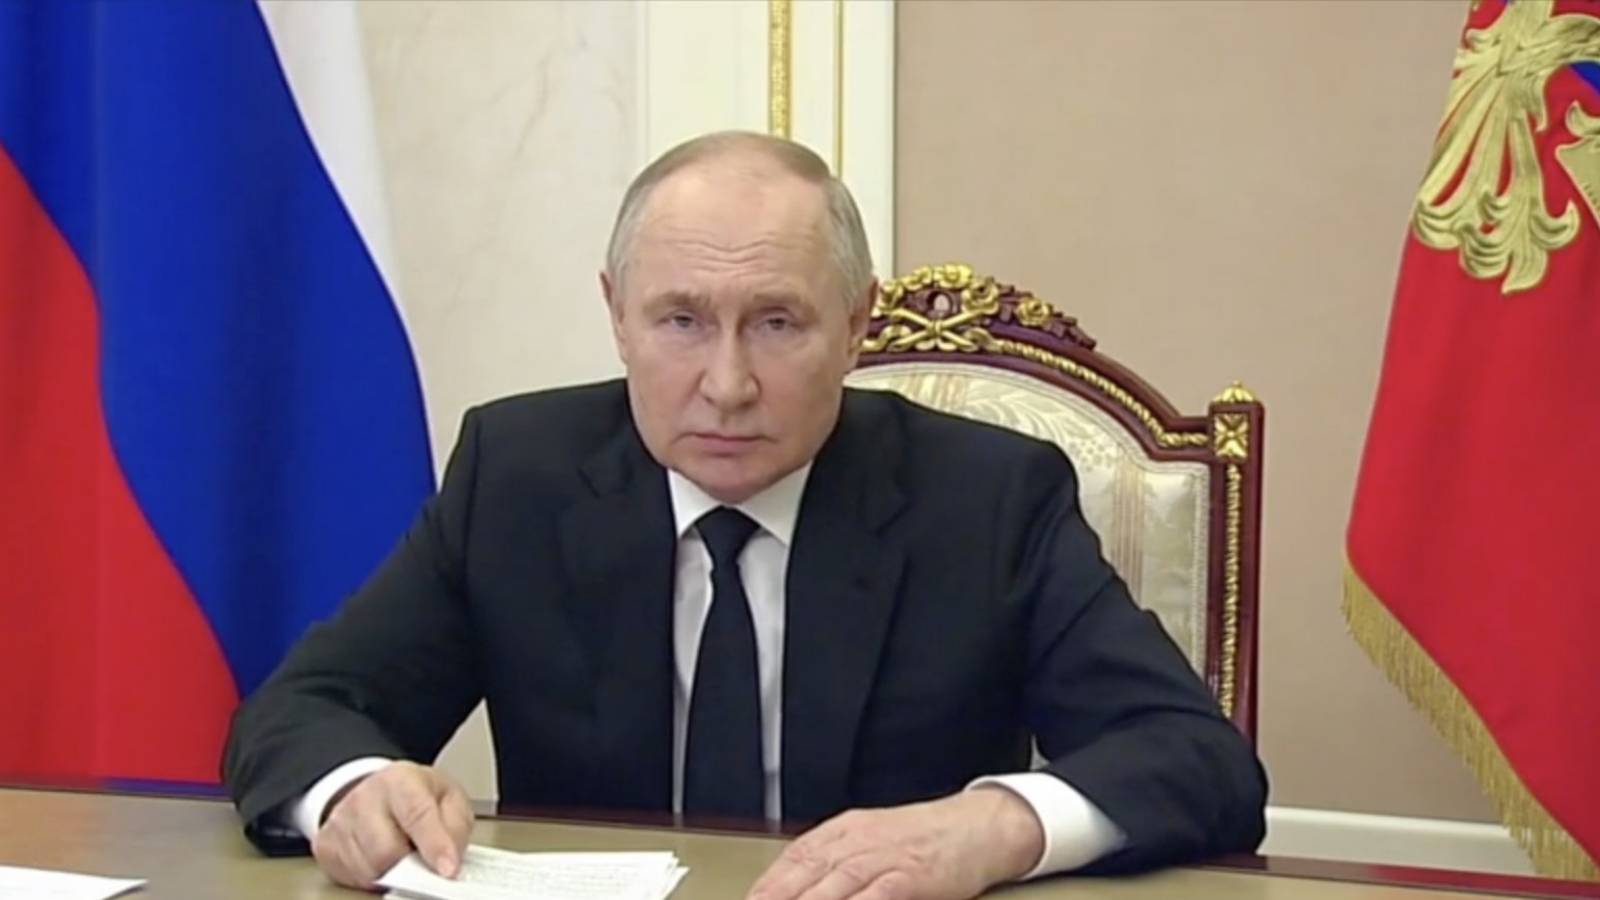 Vladimir Poetin beschuldigt Oekraïne ervan opdracht te geven tot de terroristische aanslag in Moskou